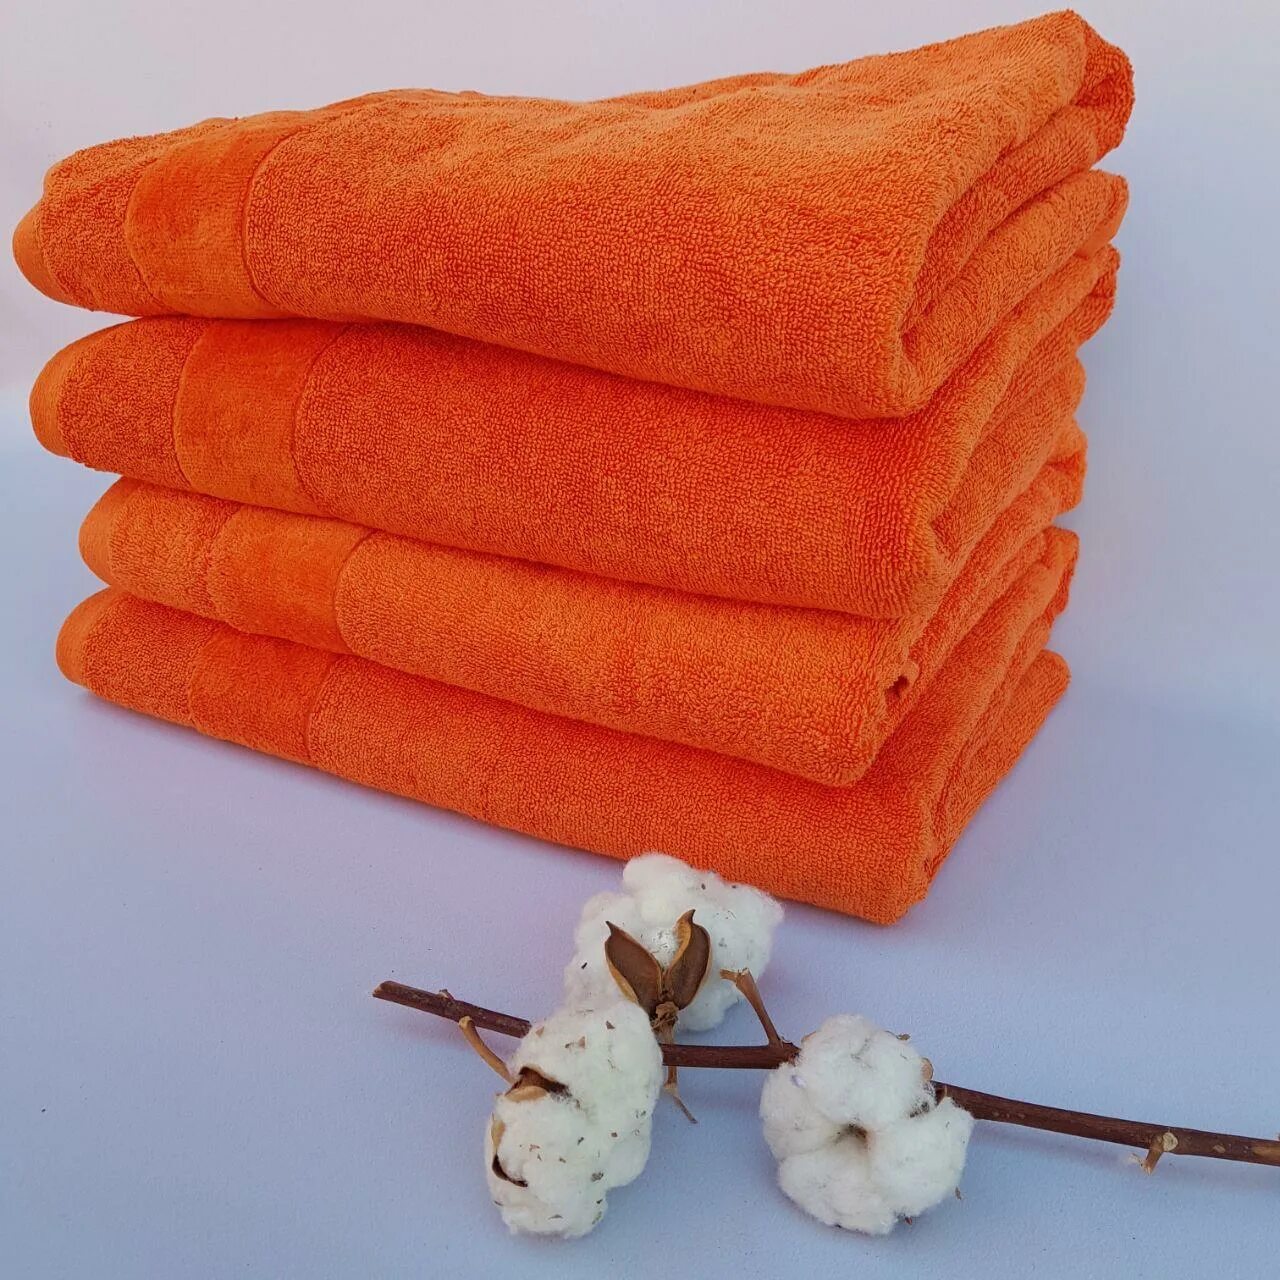 Оранжевое полотенце. Полотенце Орион оранж. Банное полотенце оранжевое. Полотенце махровое оранжевое.